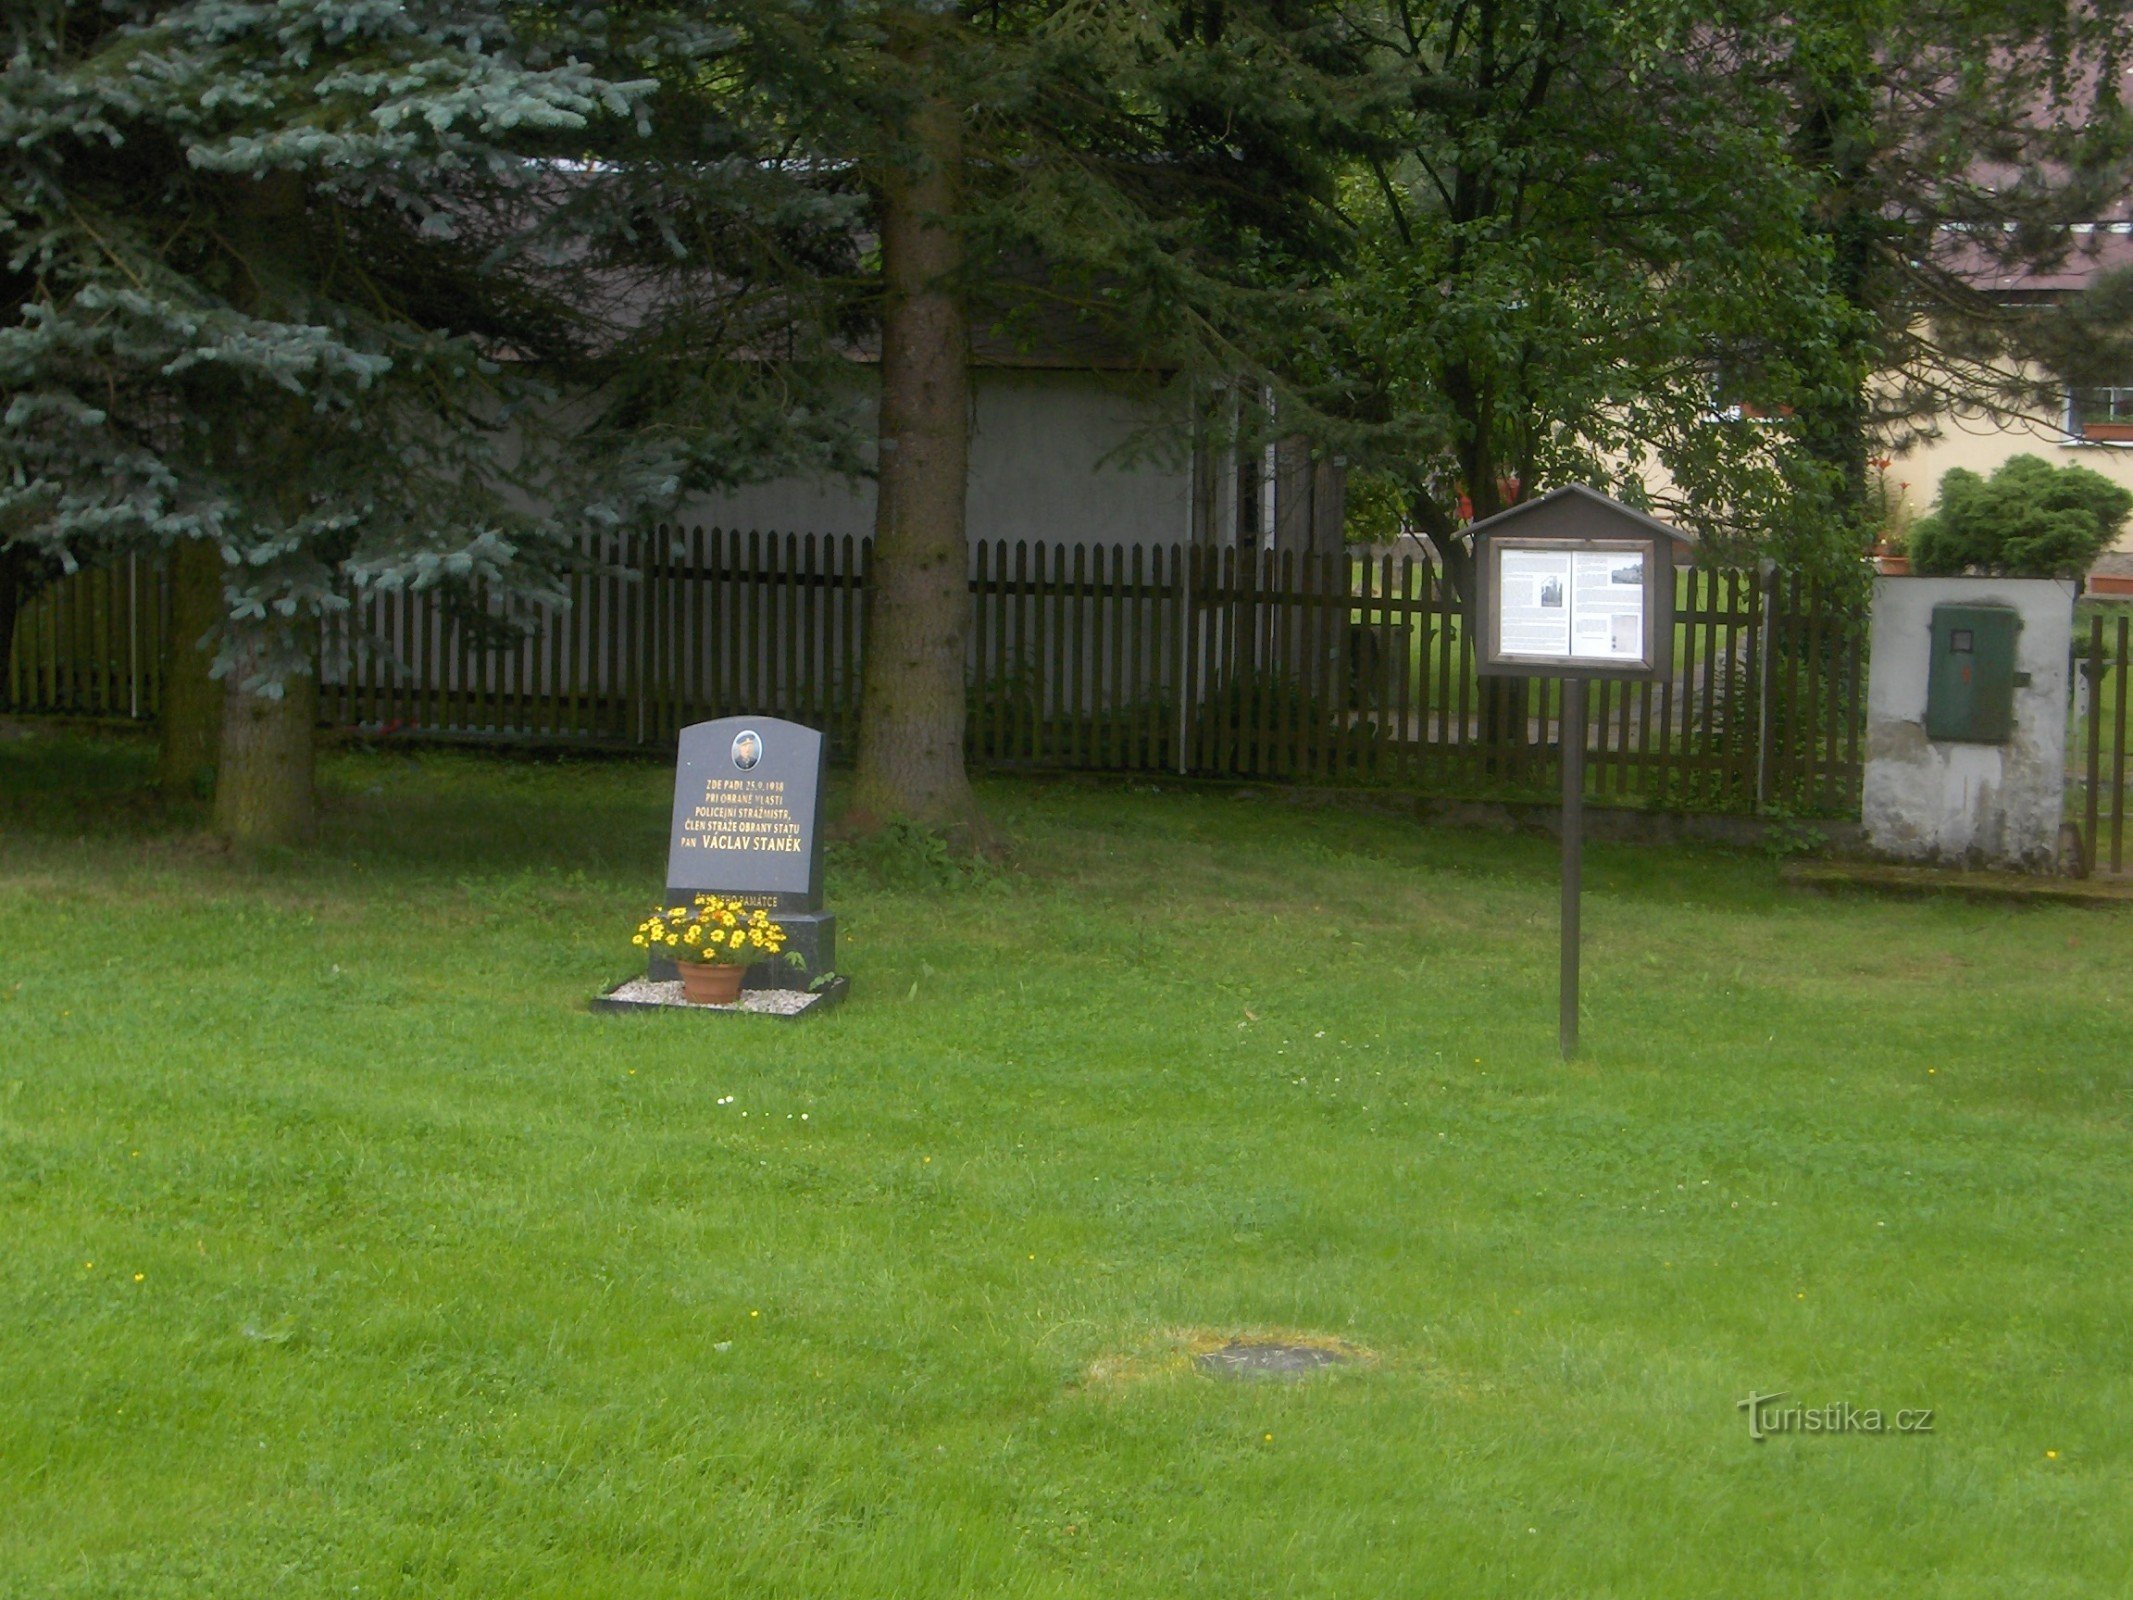 Памятник охраннику Вацлаву Станеку.